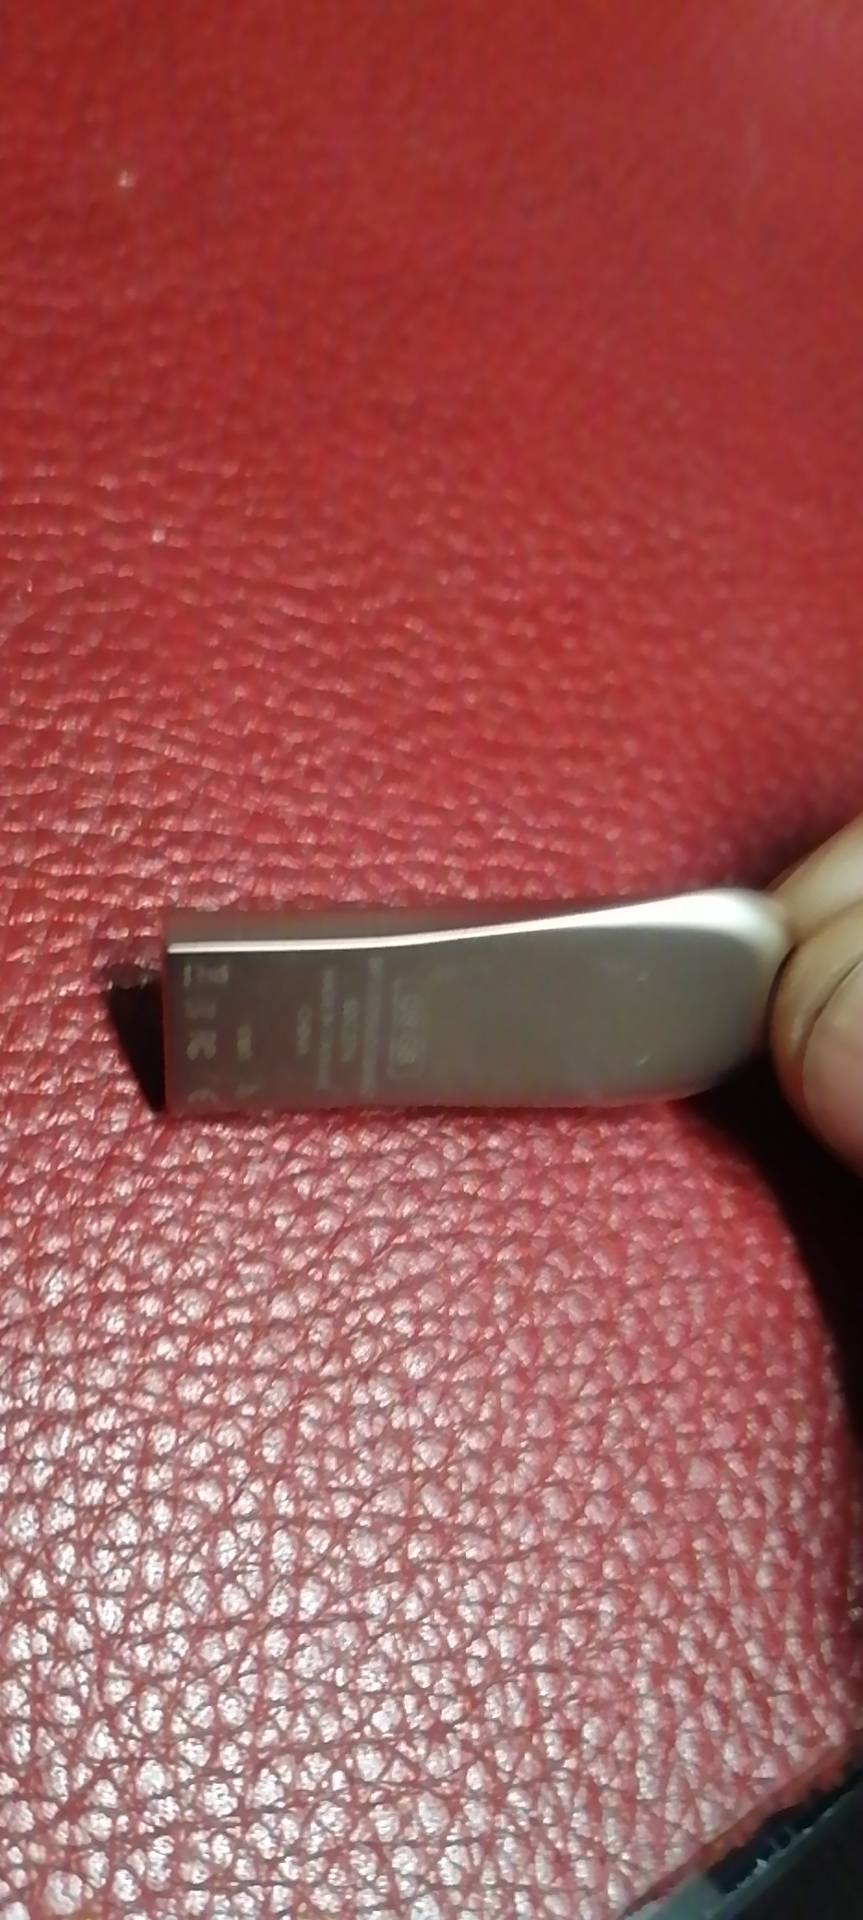 [官方授权]闪迪(SanDisk) U盘128G 酷奂CZ74 高速USB3.1闪存盘 金属激光 礼品定制刻字晒单图